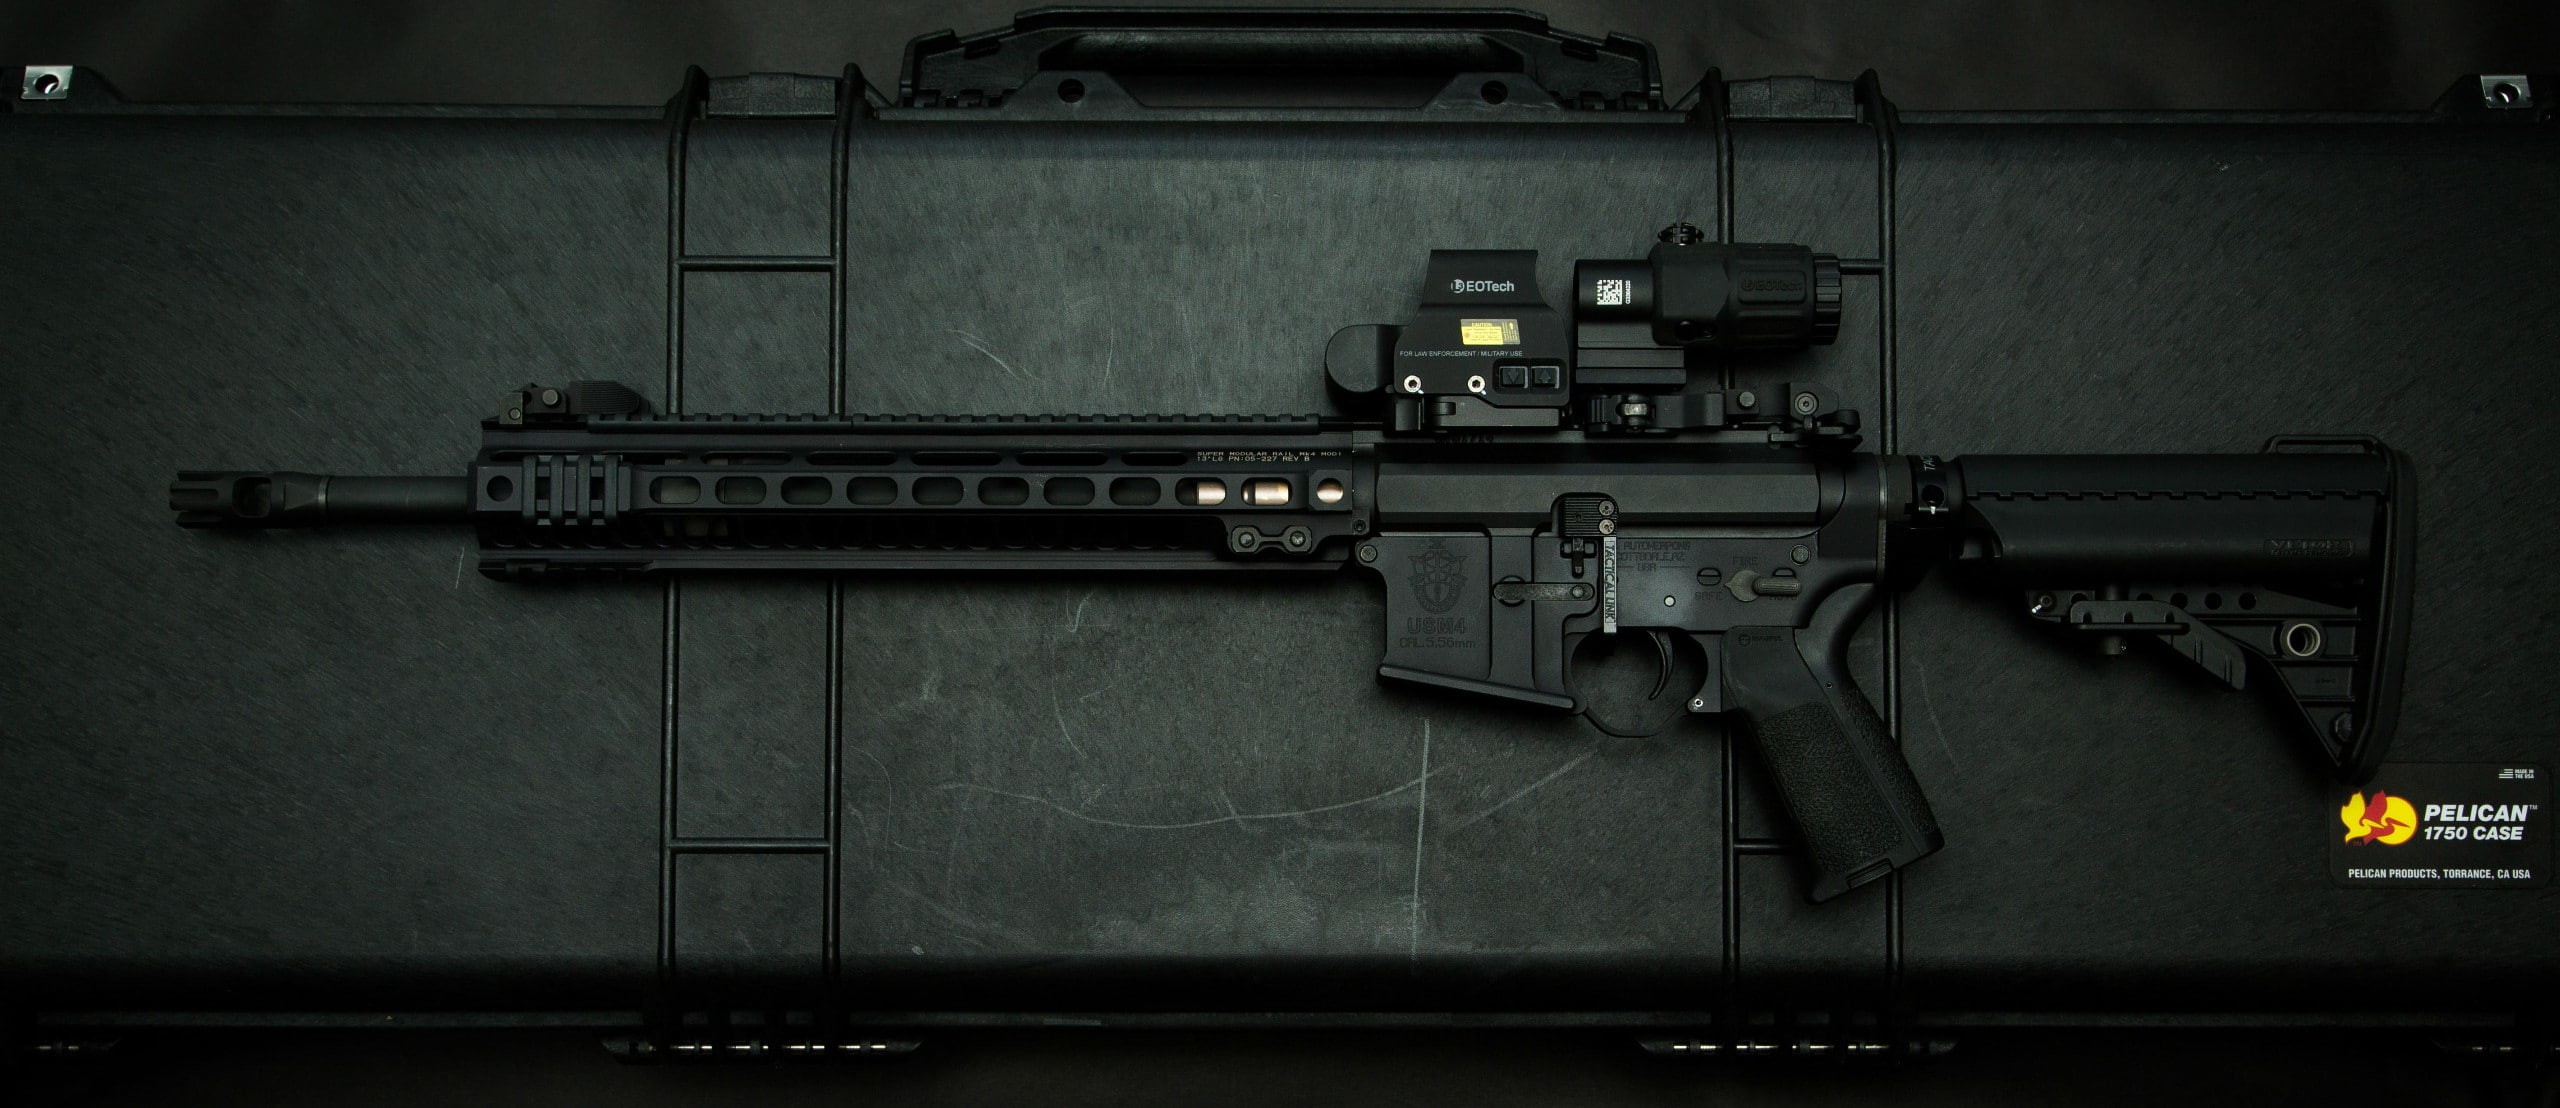 2560x1108 HD wallpaper: gun, ammunition, knife, assault rifle, pistol, Glock, AR-15 |  Wallpaper Flare